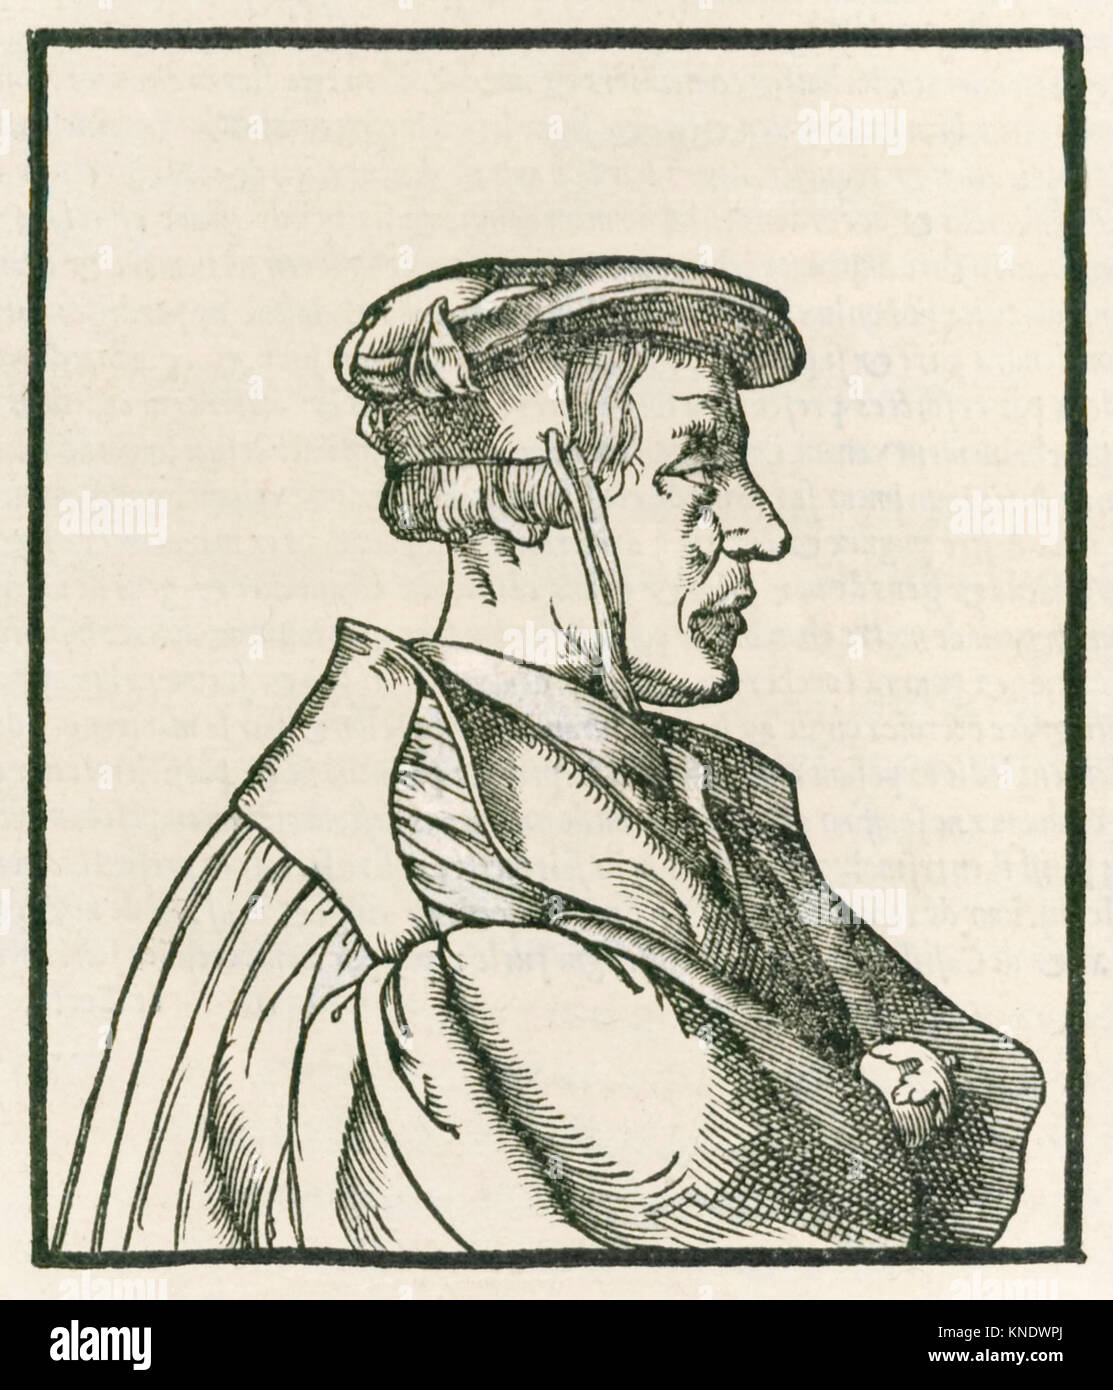 Heinrich Cornelius Agrippa von Nettesheim (1486-1535) page de titre gravure de 'De occulta philosophia libri tres' publié en 1533. Voir plus d'informations ci-dessous. Banque D'Images